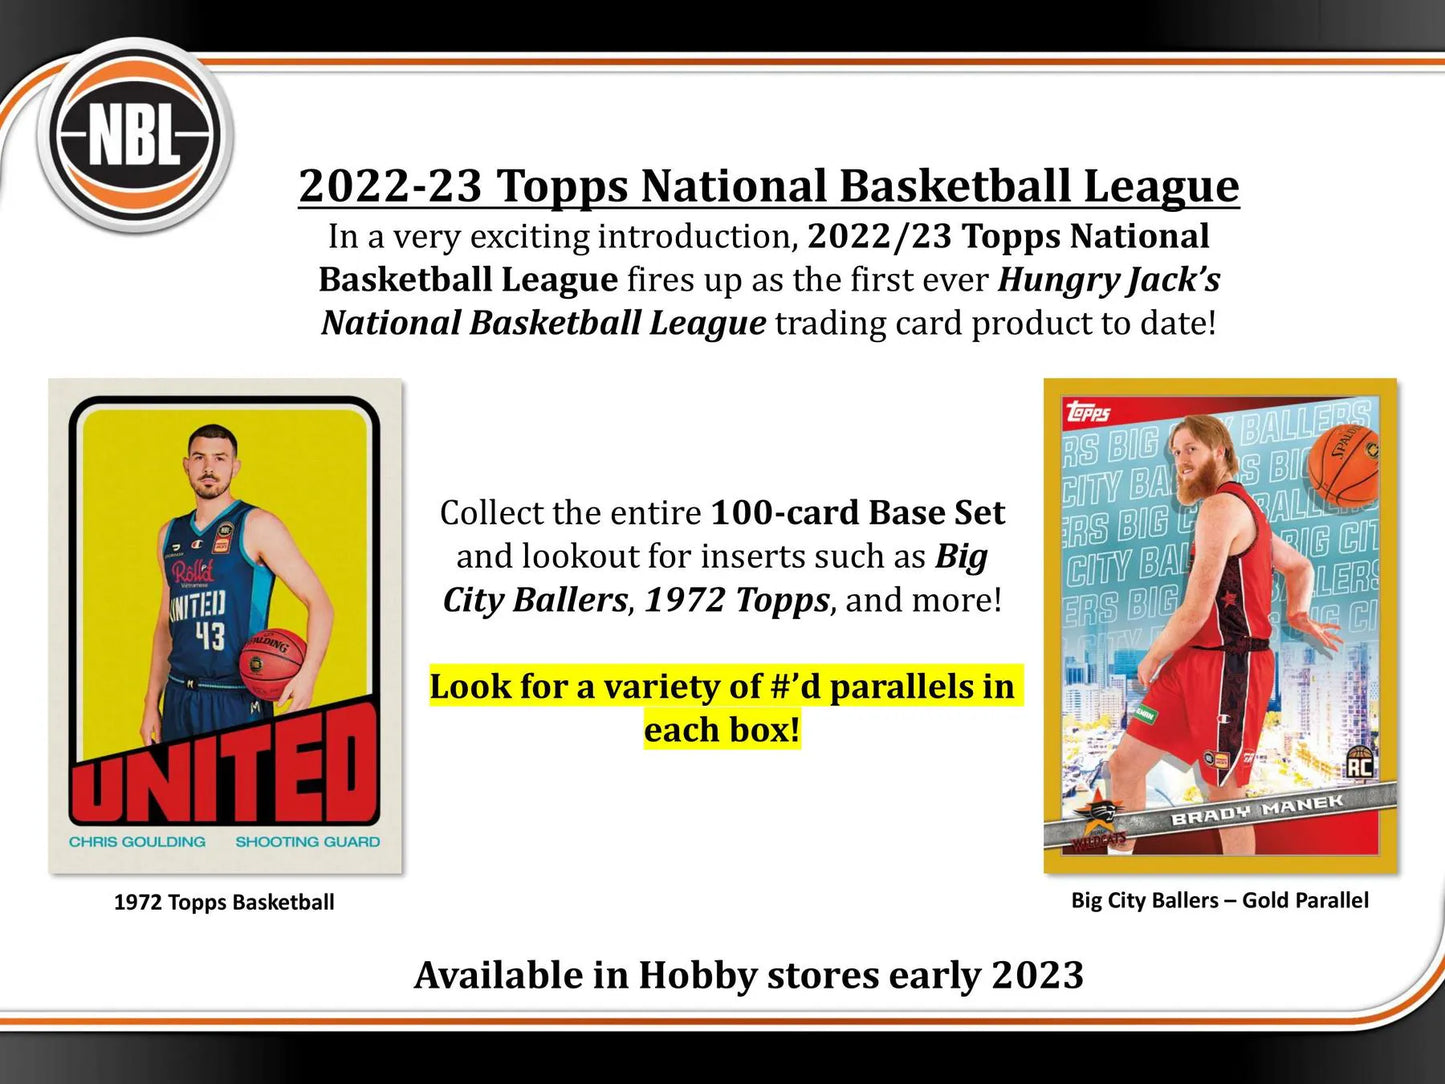 2022/23 Topps NBL Basketball Hobby 12-Box Case